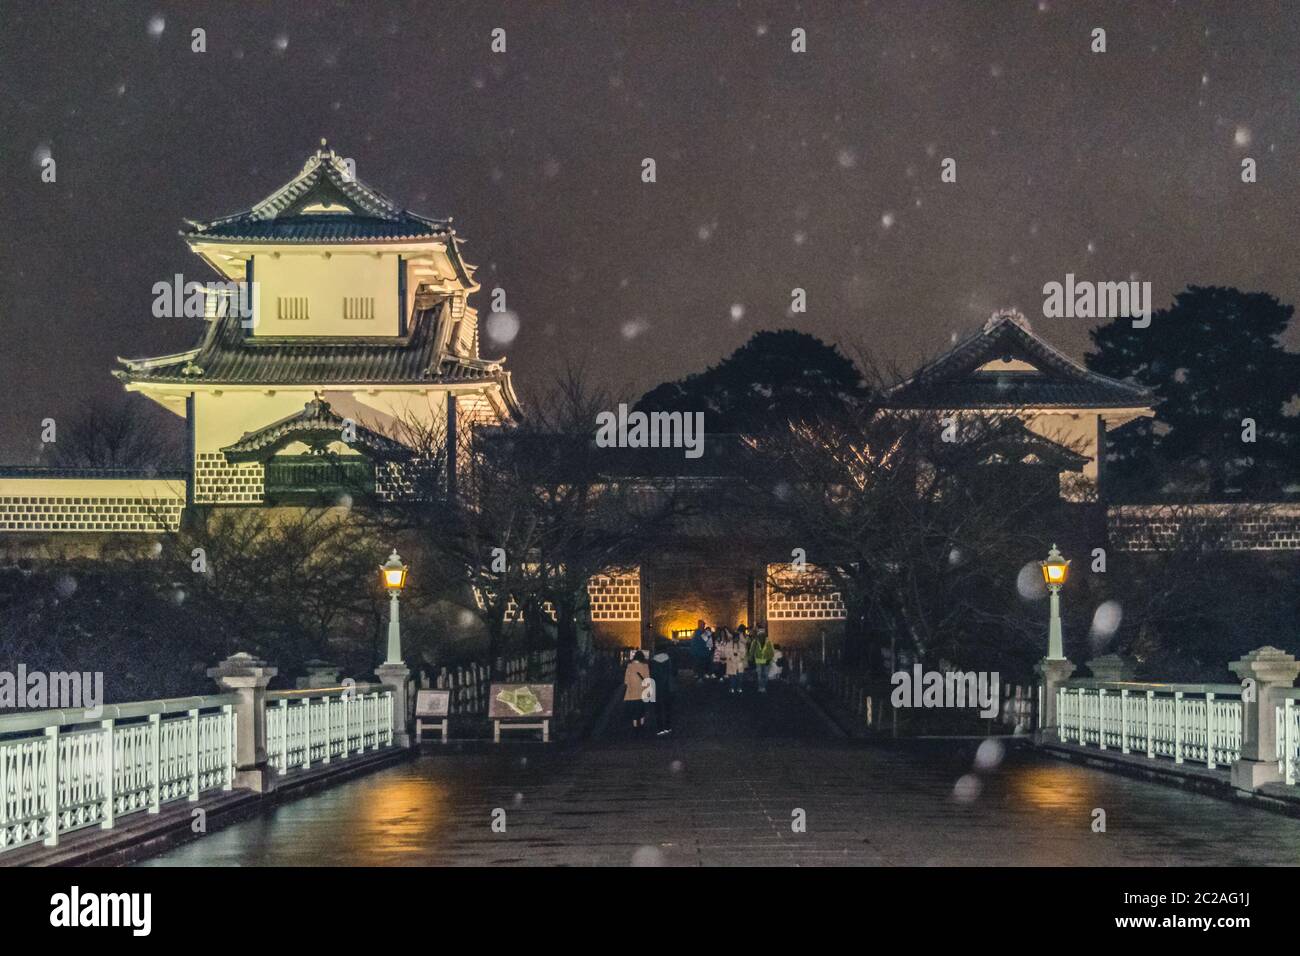 Scène nocturne du château de Kanazawa, Japon Banque D'Images